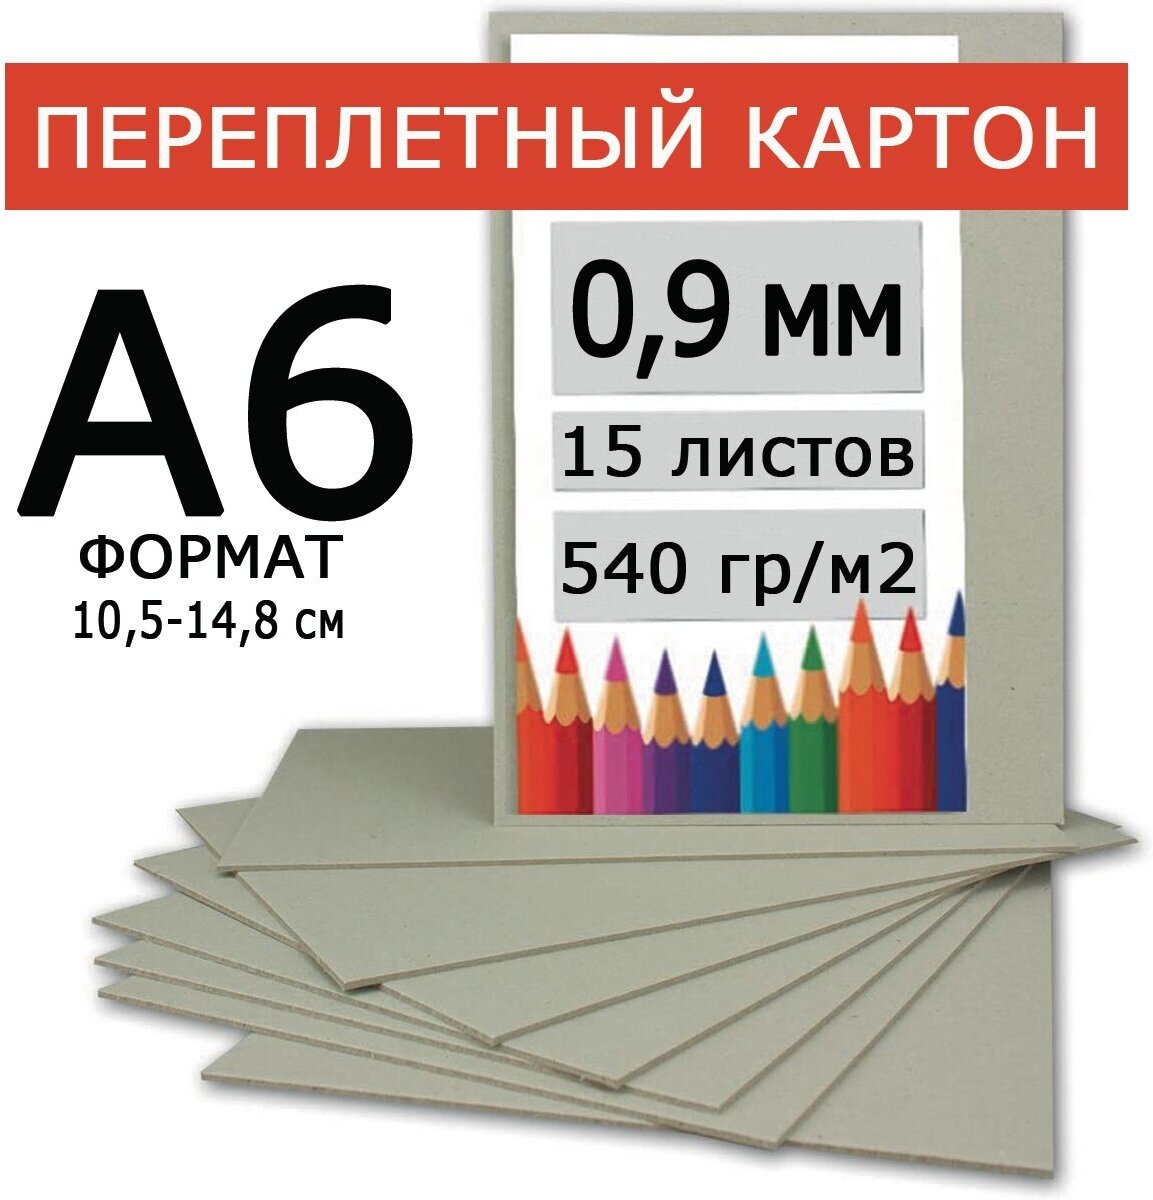 Переплетный картон 0,9 мм А6 105х148 мм для скрапбукинга, творчества, рисования и рукоделия, 15 шт.